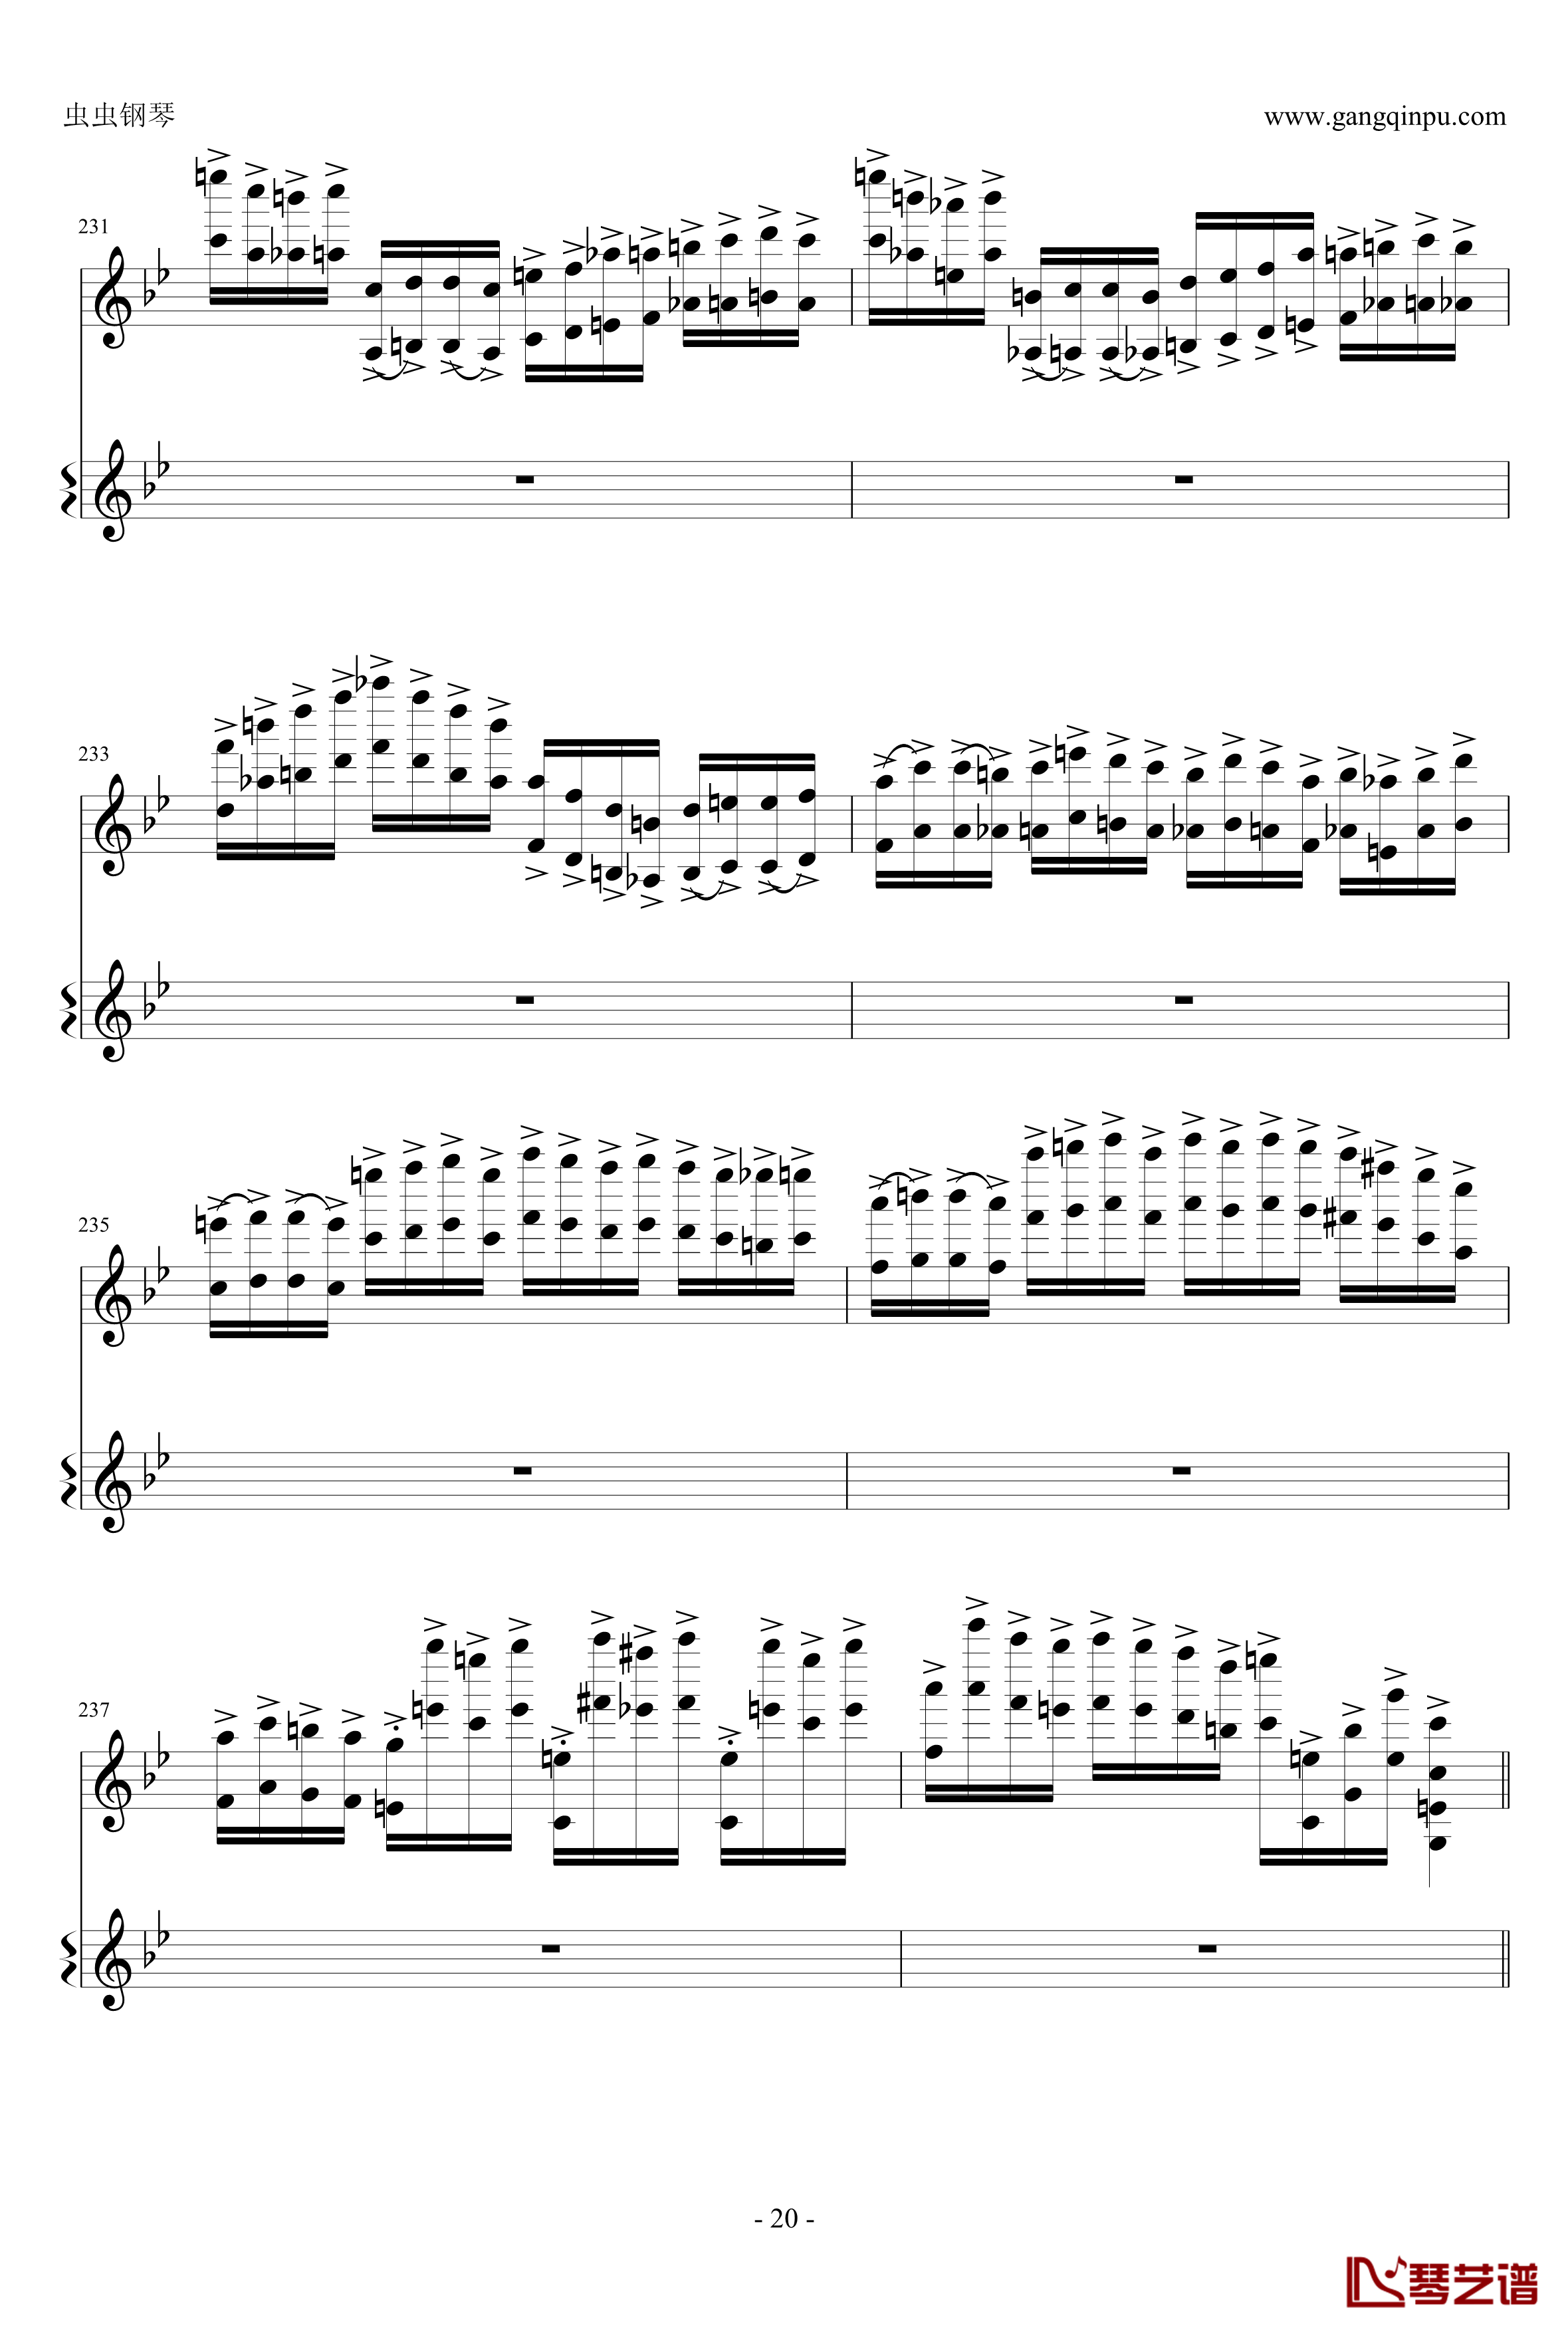 意大利国歌钢琴谱-变奏曲修改版-DXF20